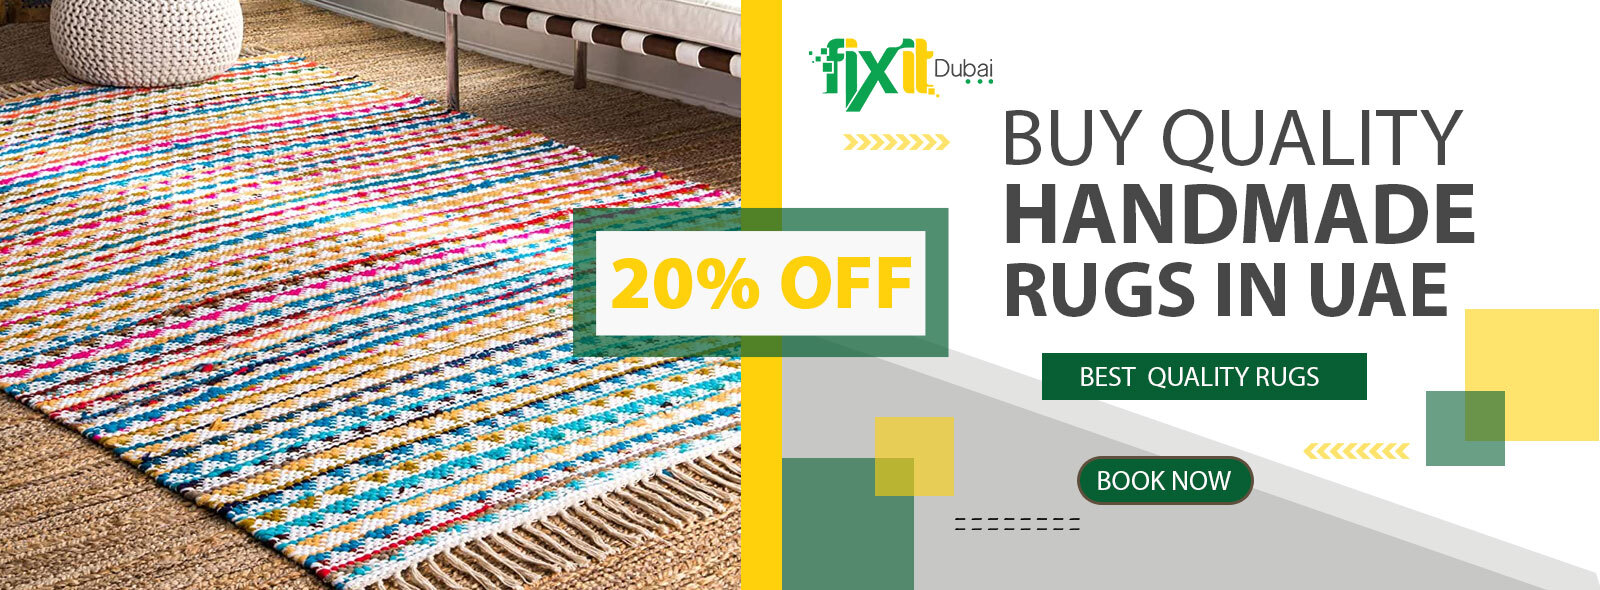 handmade-rugs-in-UAE